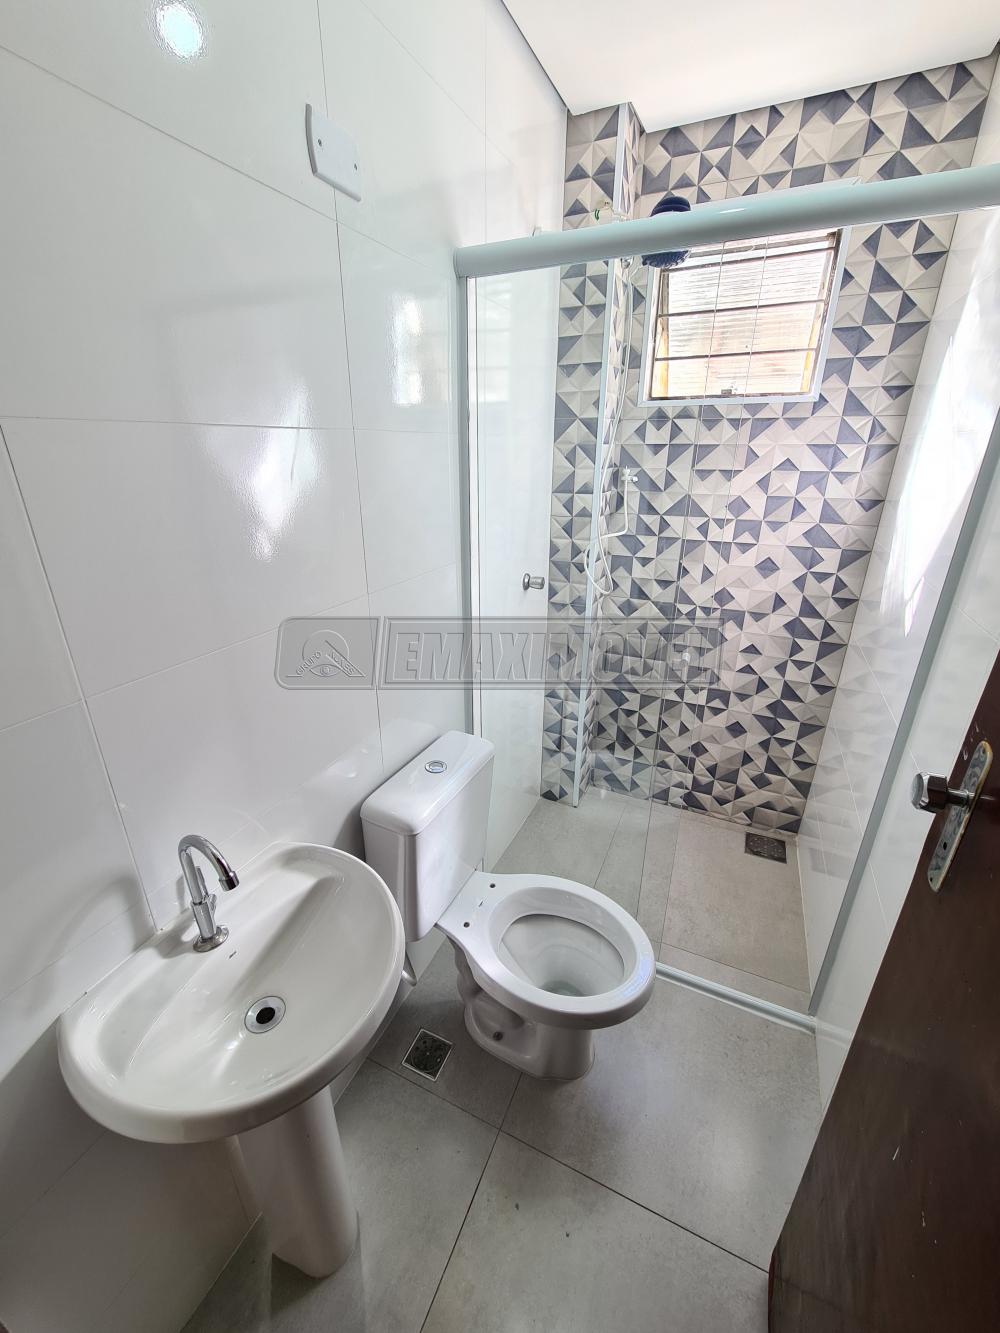 Alugar Apartamento / Padrão em Sorocaba R$ 1.100,00 - Foto 6